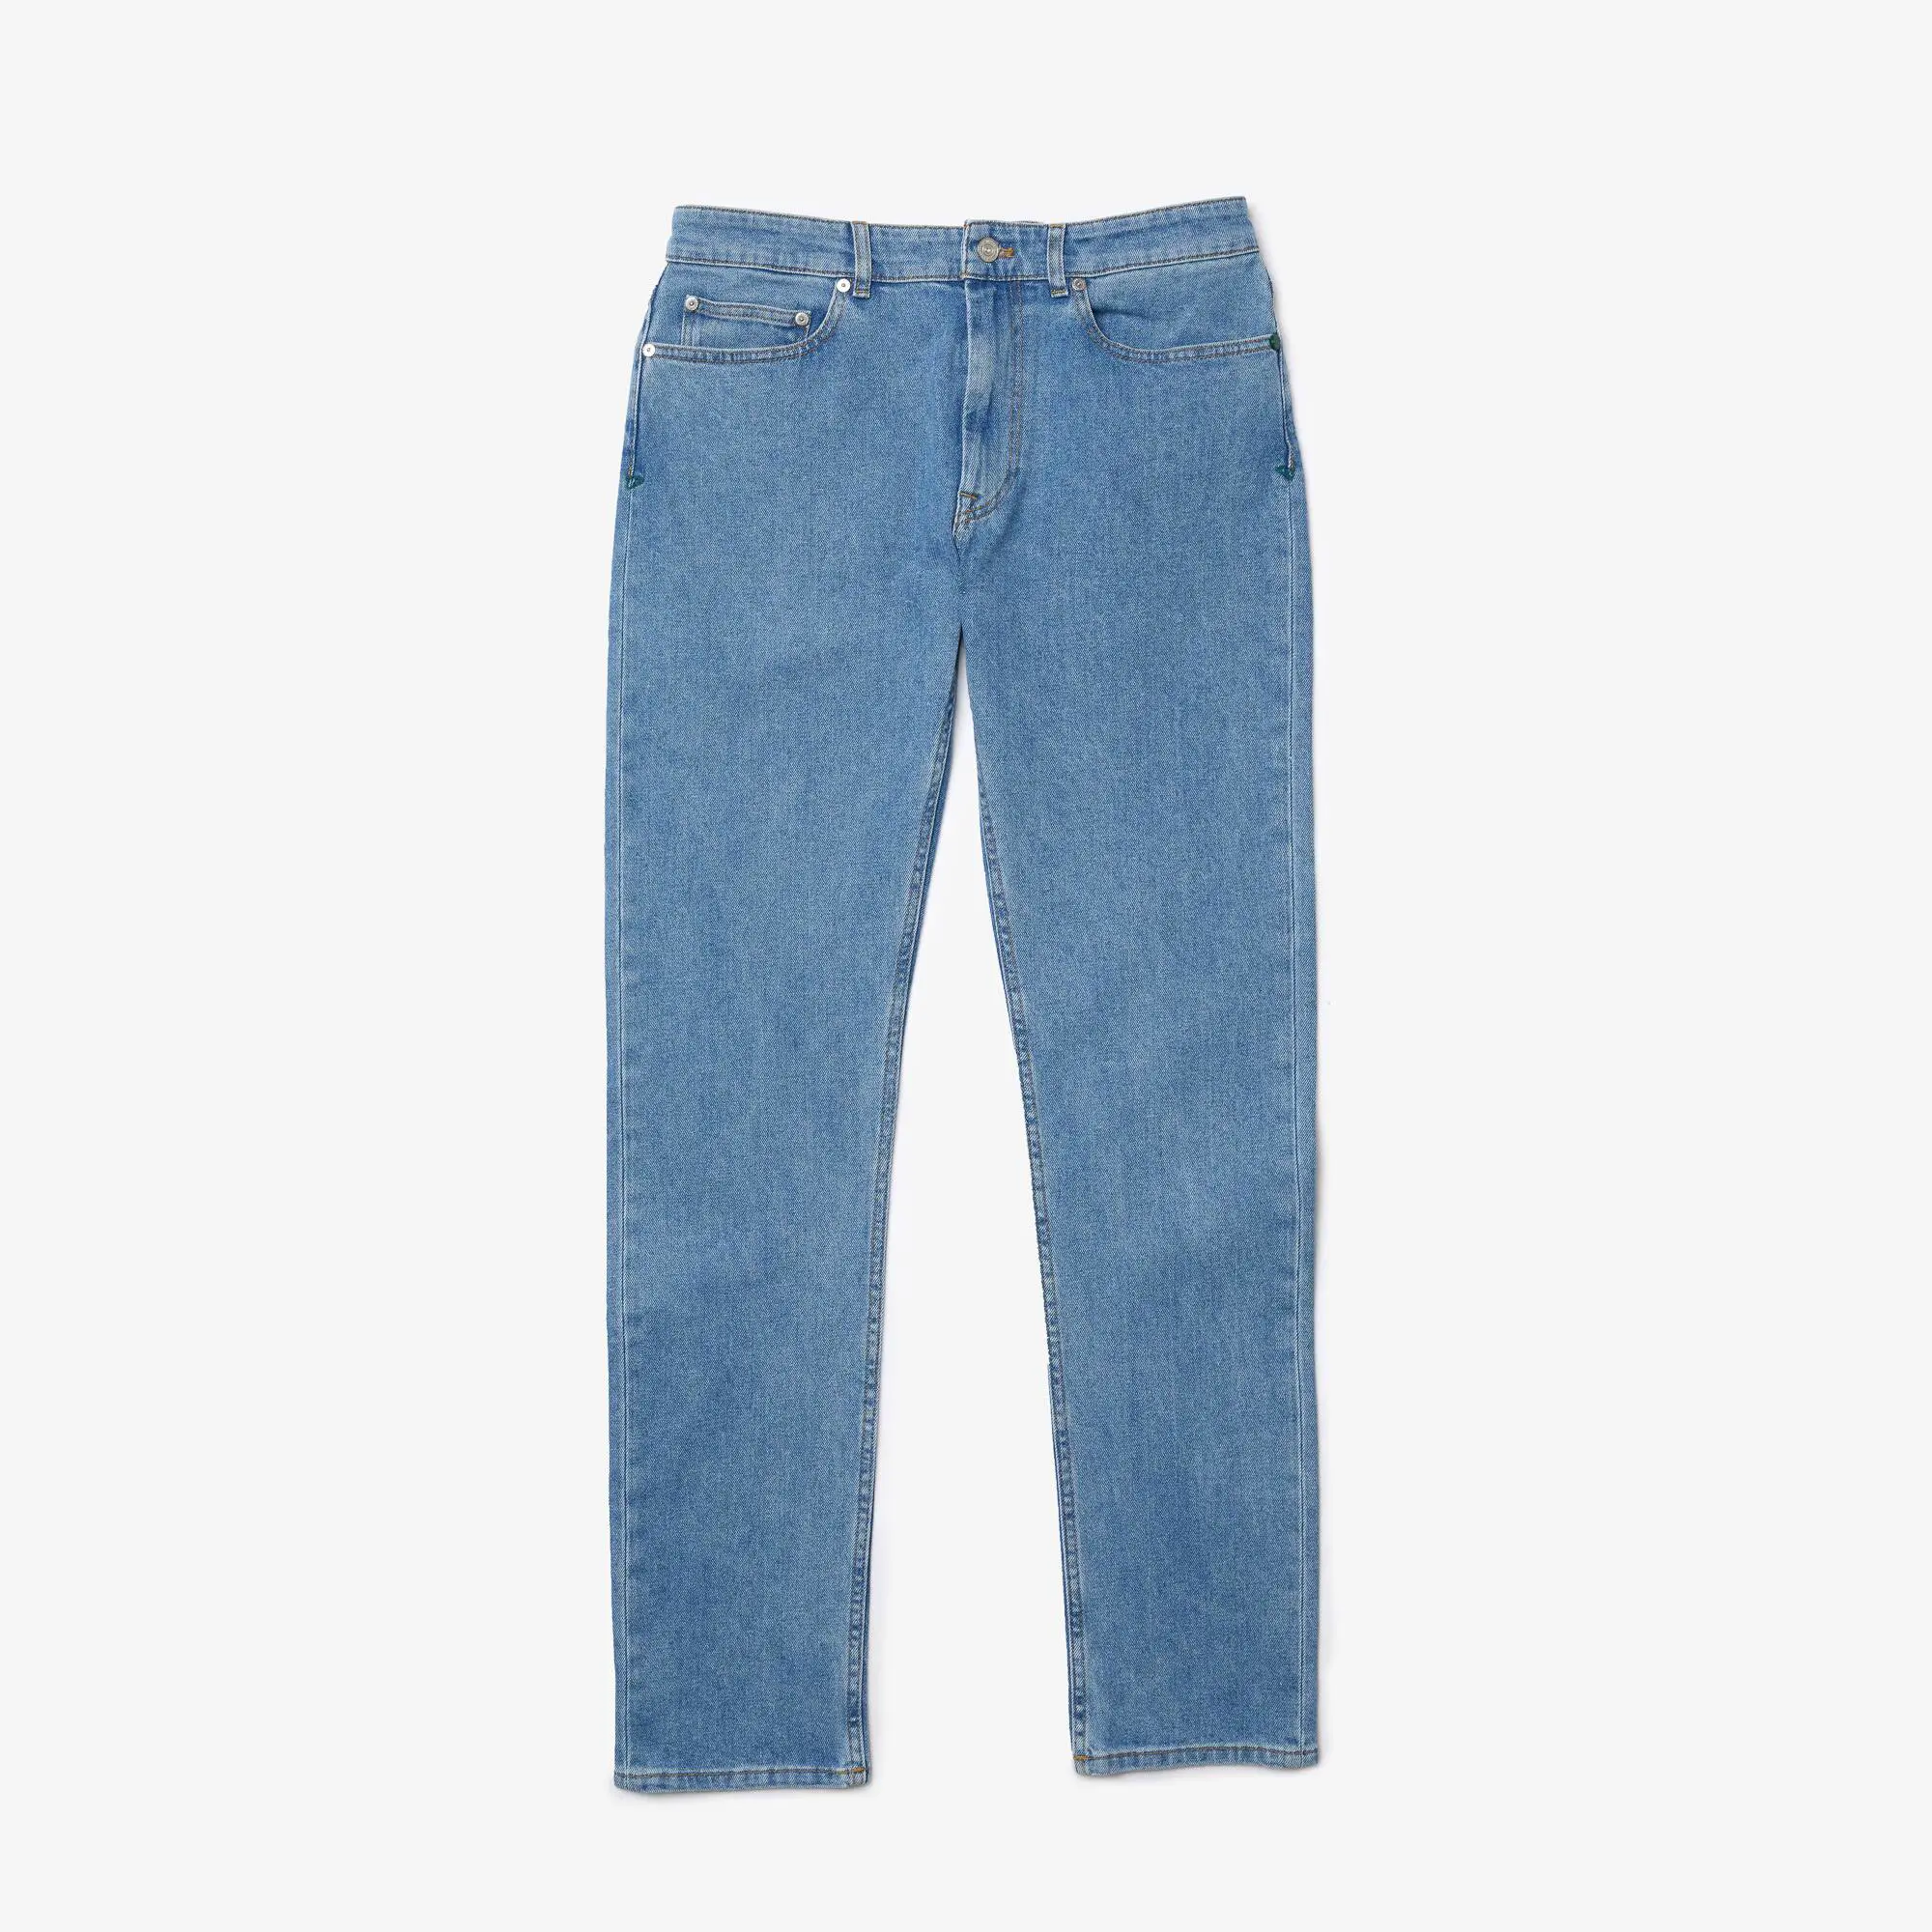 Lacoste Jeans da uomo slim fit in denim di cotone stretch. 2